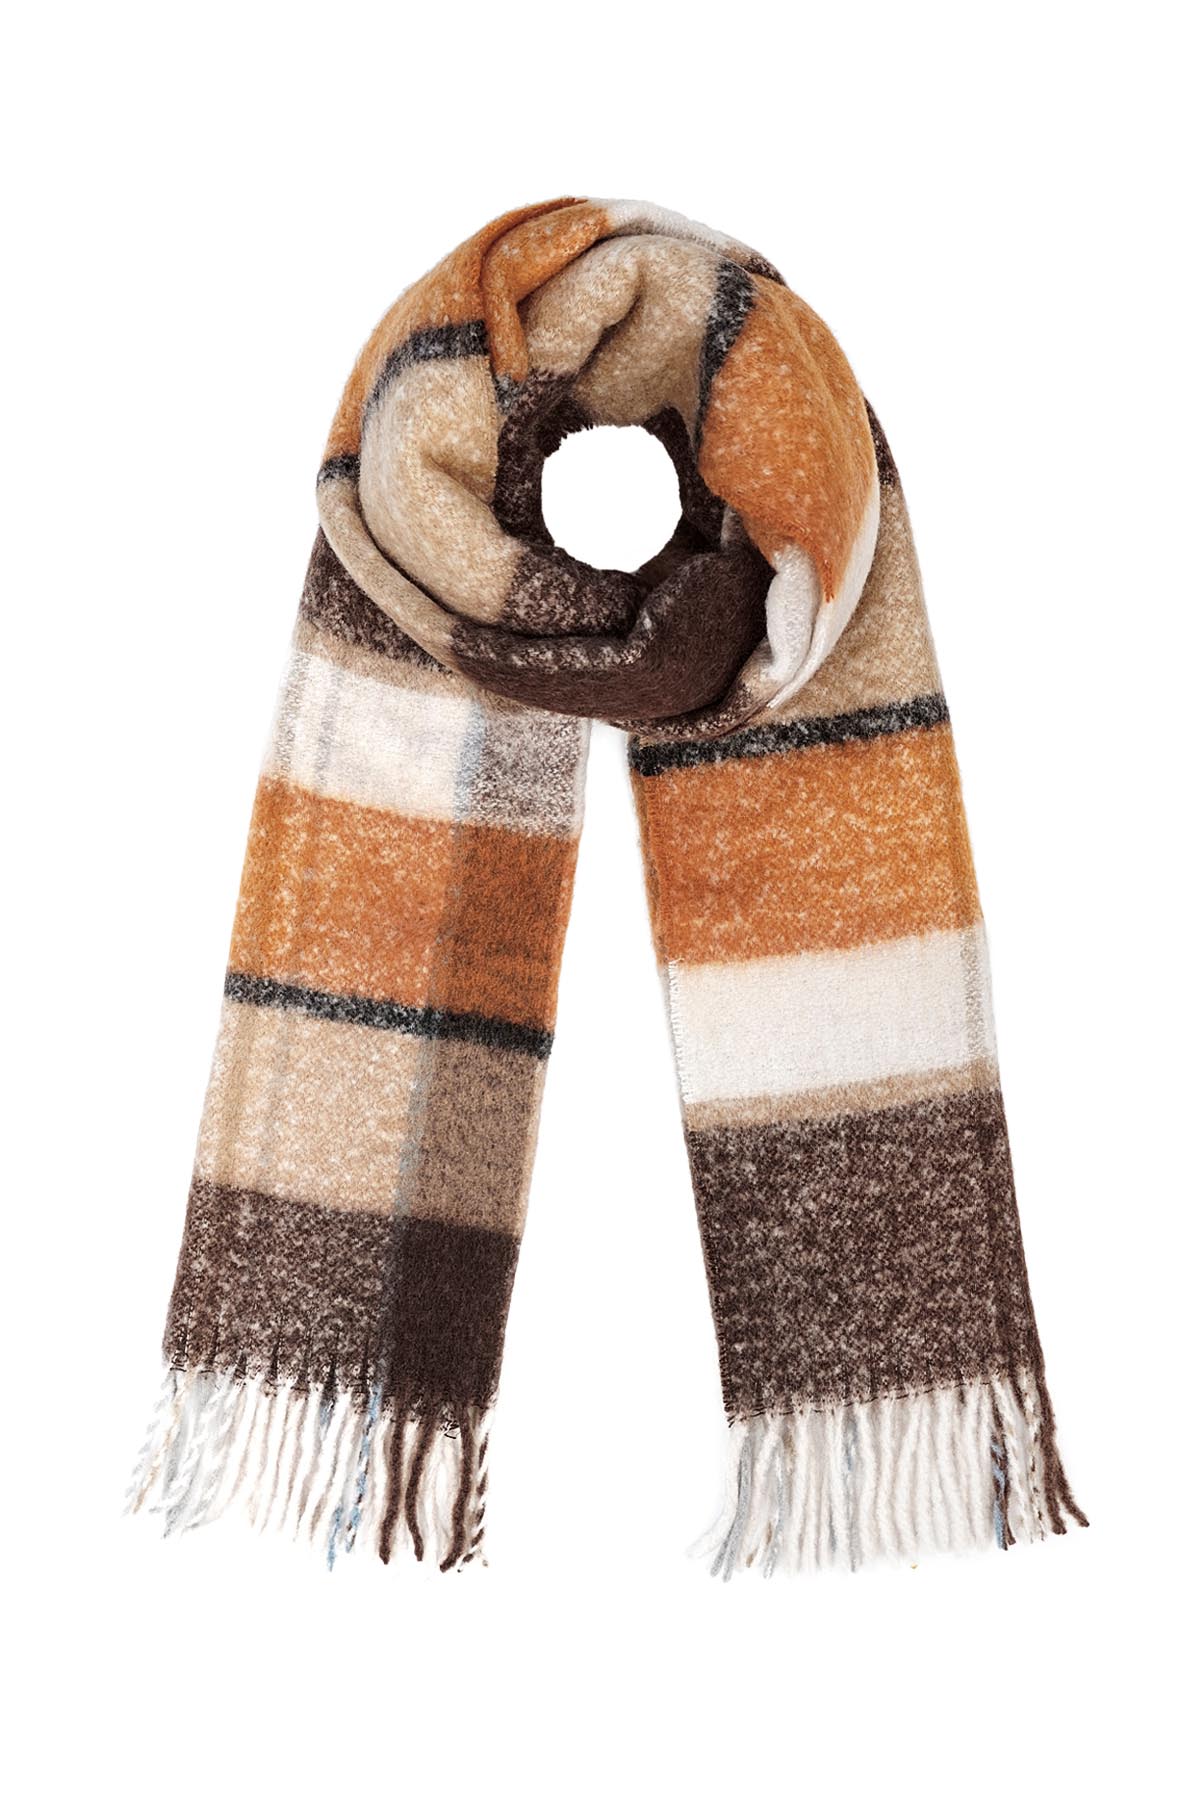 Sjaal gekleurde vlakken - bruin h5 